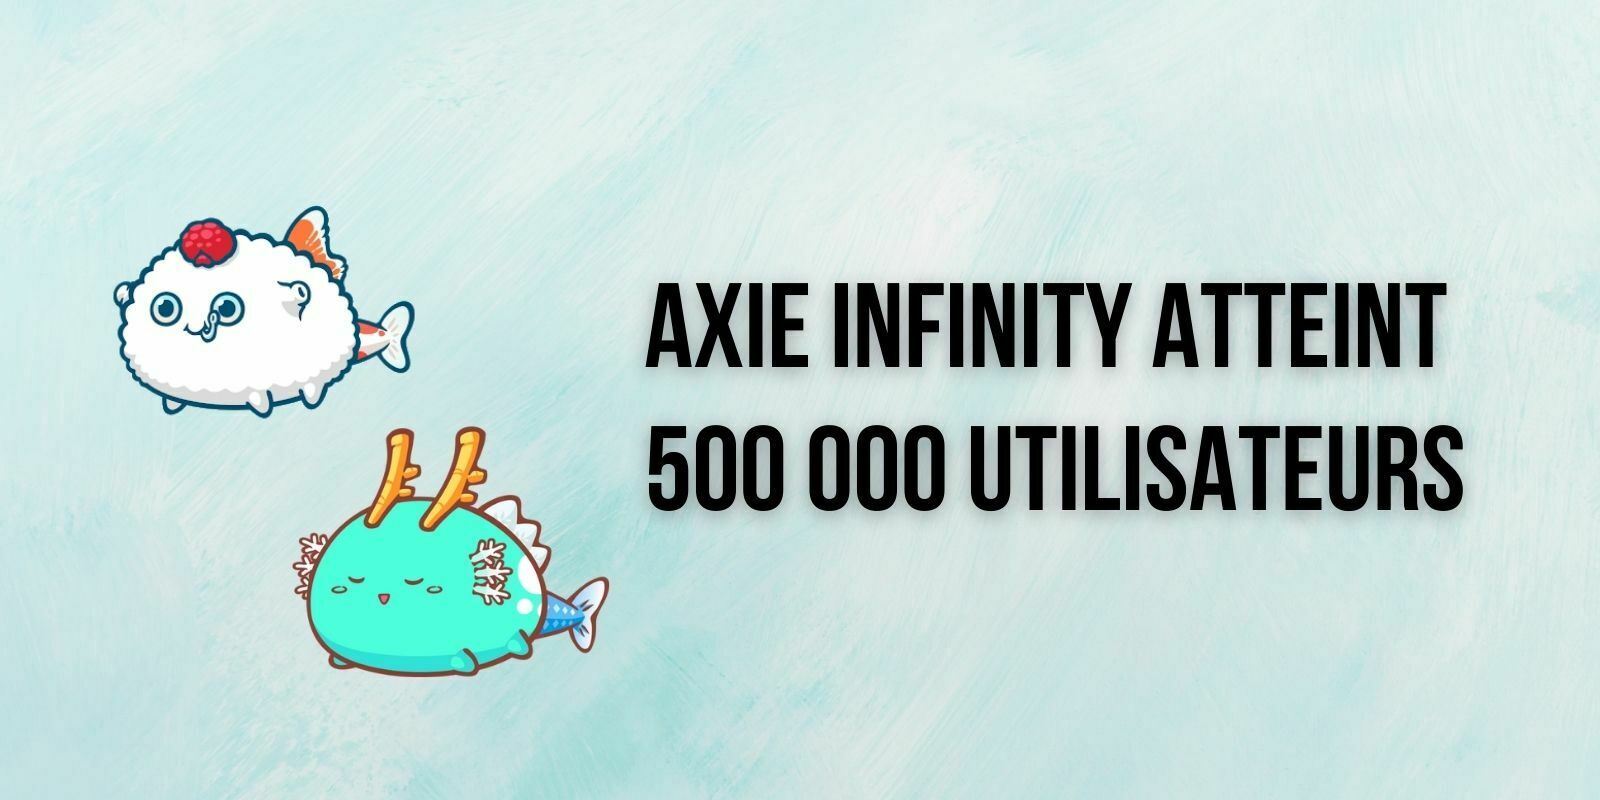 Axie Infinity (AXS) atteint 500 000 utilisateurs et génère 32M$ de revenus en 1 semaine